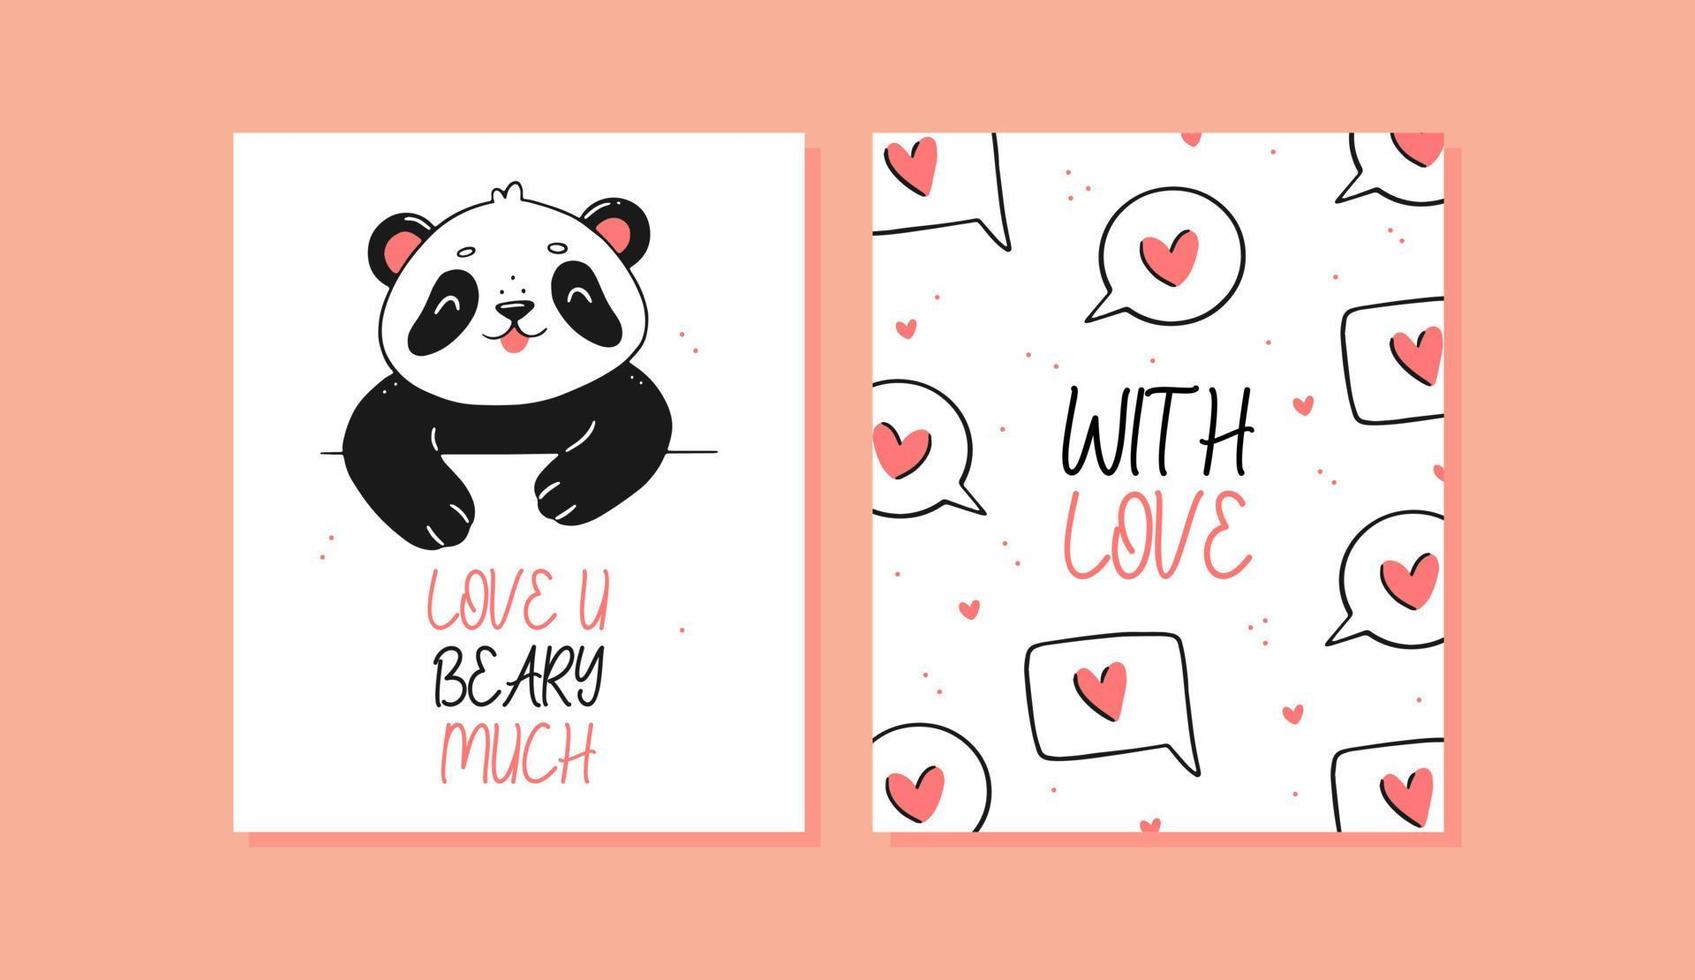 een set kaarten met een schattige panda. panda met een hart en tekst hou veel van je baby, geld met hartjes en tekst met liefde. vector cartoon afbeelding van een ansichtkaart.